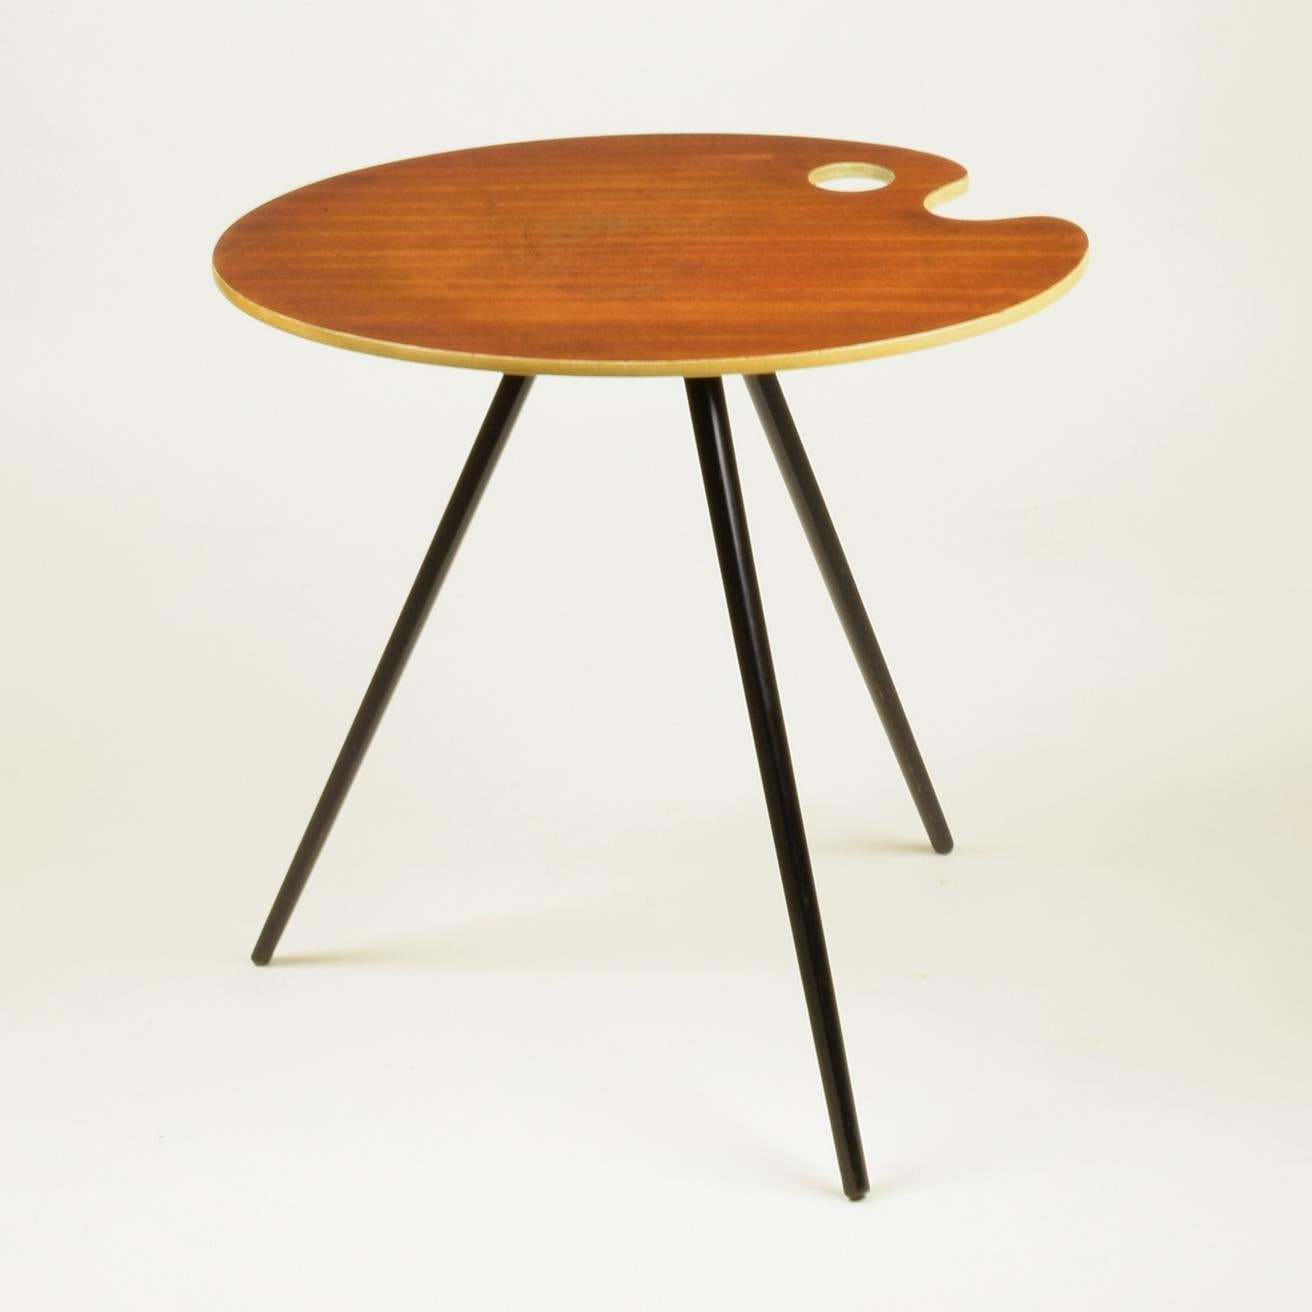 Une charmante petite table basse ou d'appoint à palette d'artiste des années 1950.
Elle est dans le style de Lucien De Roeck (voir ses dessins pour une table similaire fabriquée par Bois Manu, pour l'Expo 1958 de Bruxelles).
Elégant, délicat,